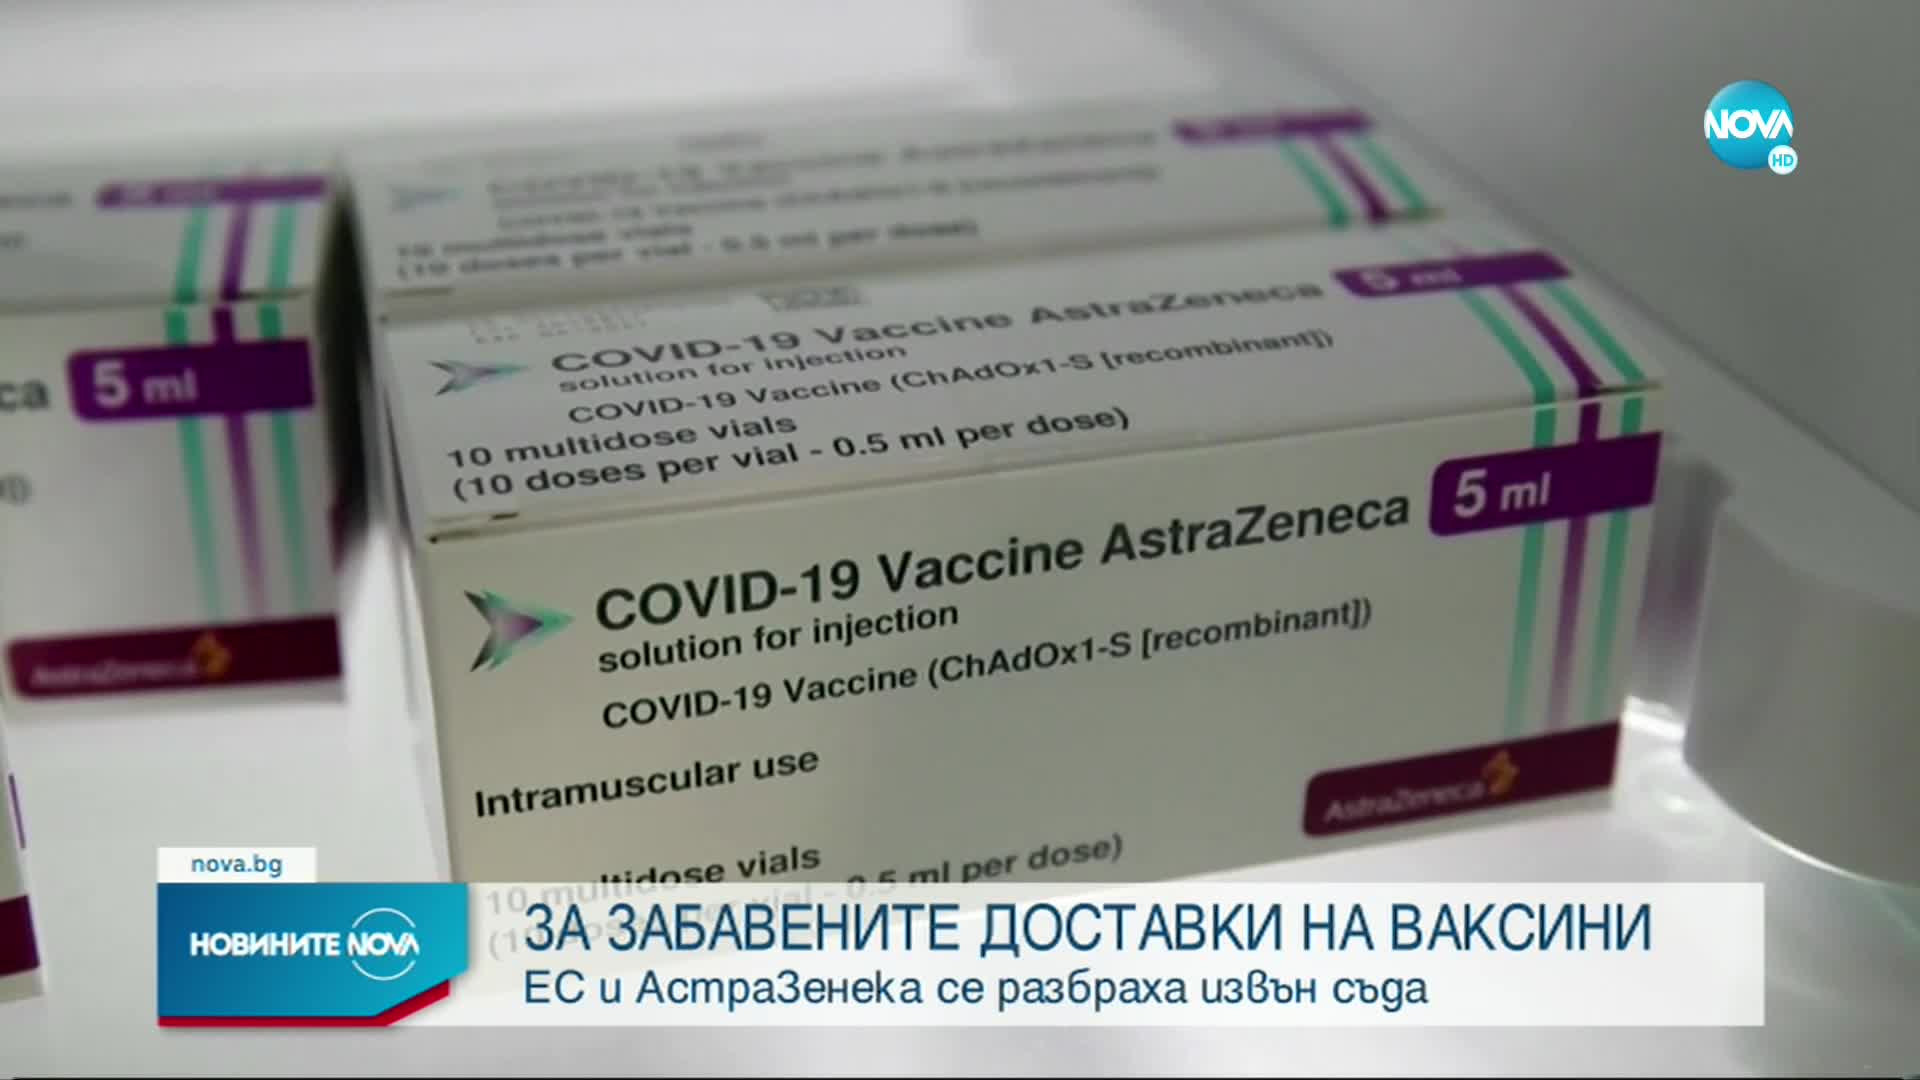 ЕС и AstraZeneca се споразумяха за доставката на ваксини, прекратяват съдебните спорове